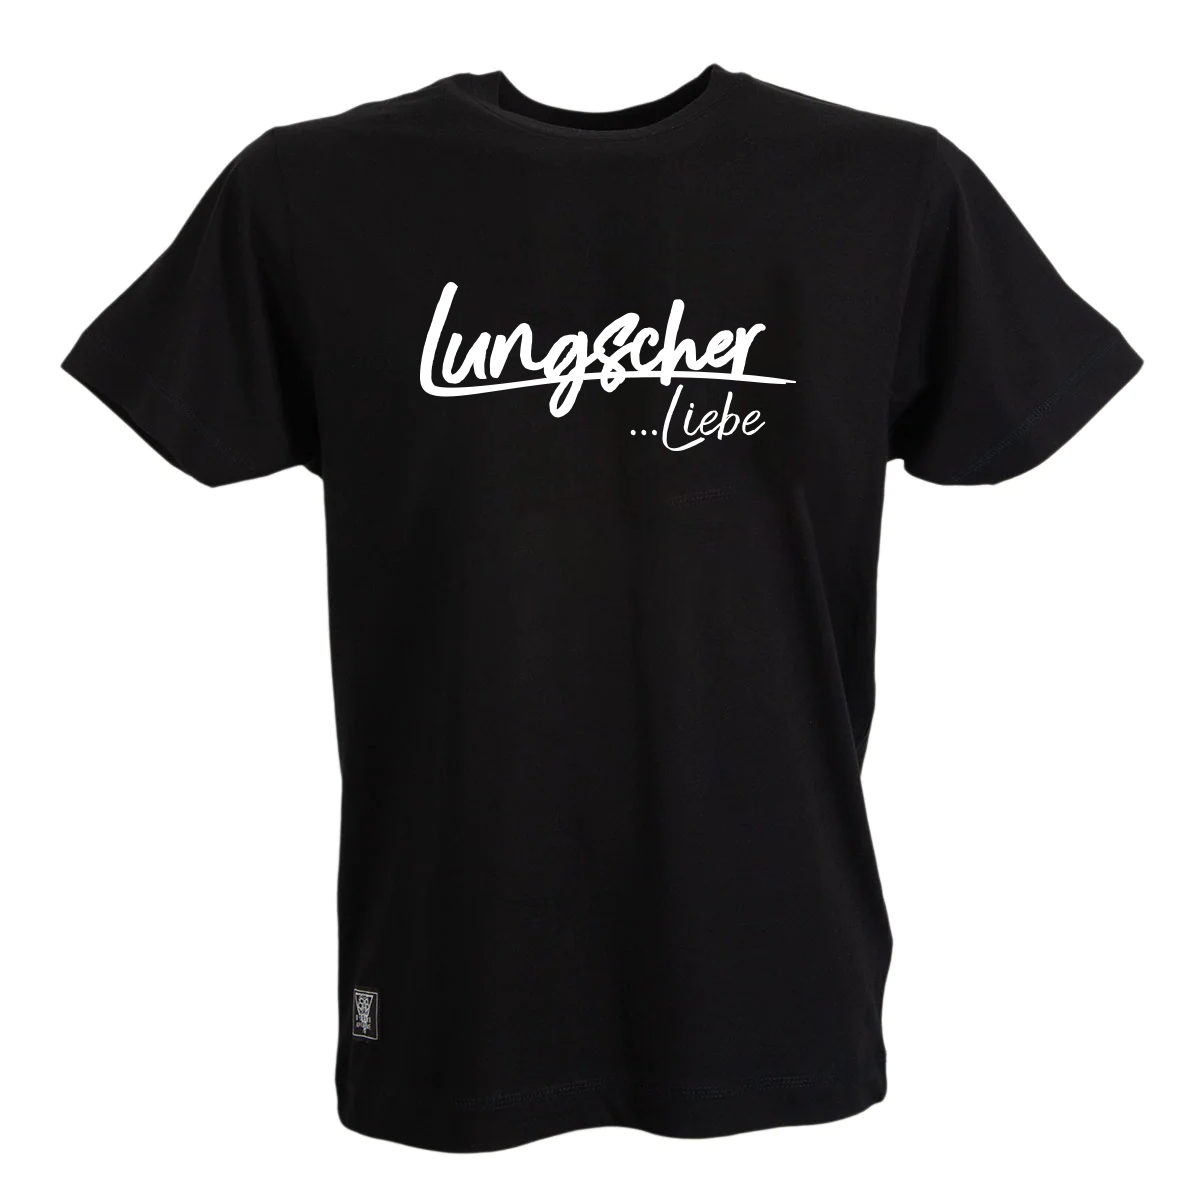 Lungscher Liebe Herren T-Shirt Schwarz - B2BA Clothing black / S / Liebe